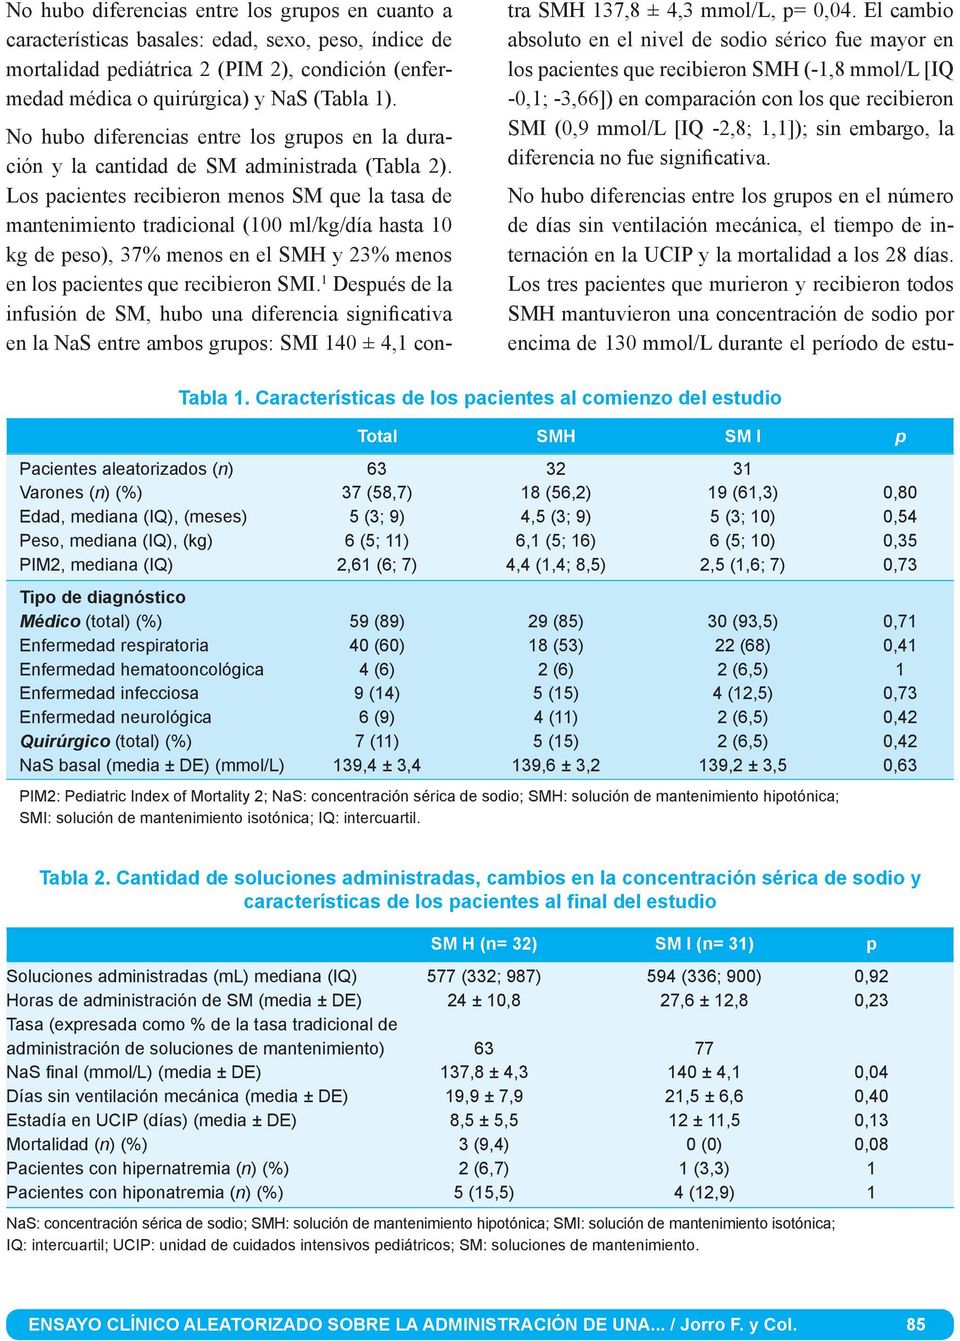 Los pacientes recibieron menos SM que la tasa de mantenimiento tradicional (100 ml/kg/día hasta 10 kg de peso), 37% menos en el SMH y 23% menos en los pacientes que recibieron SMI.